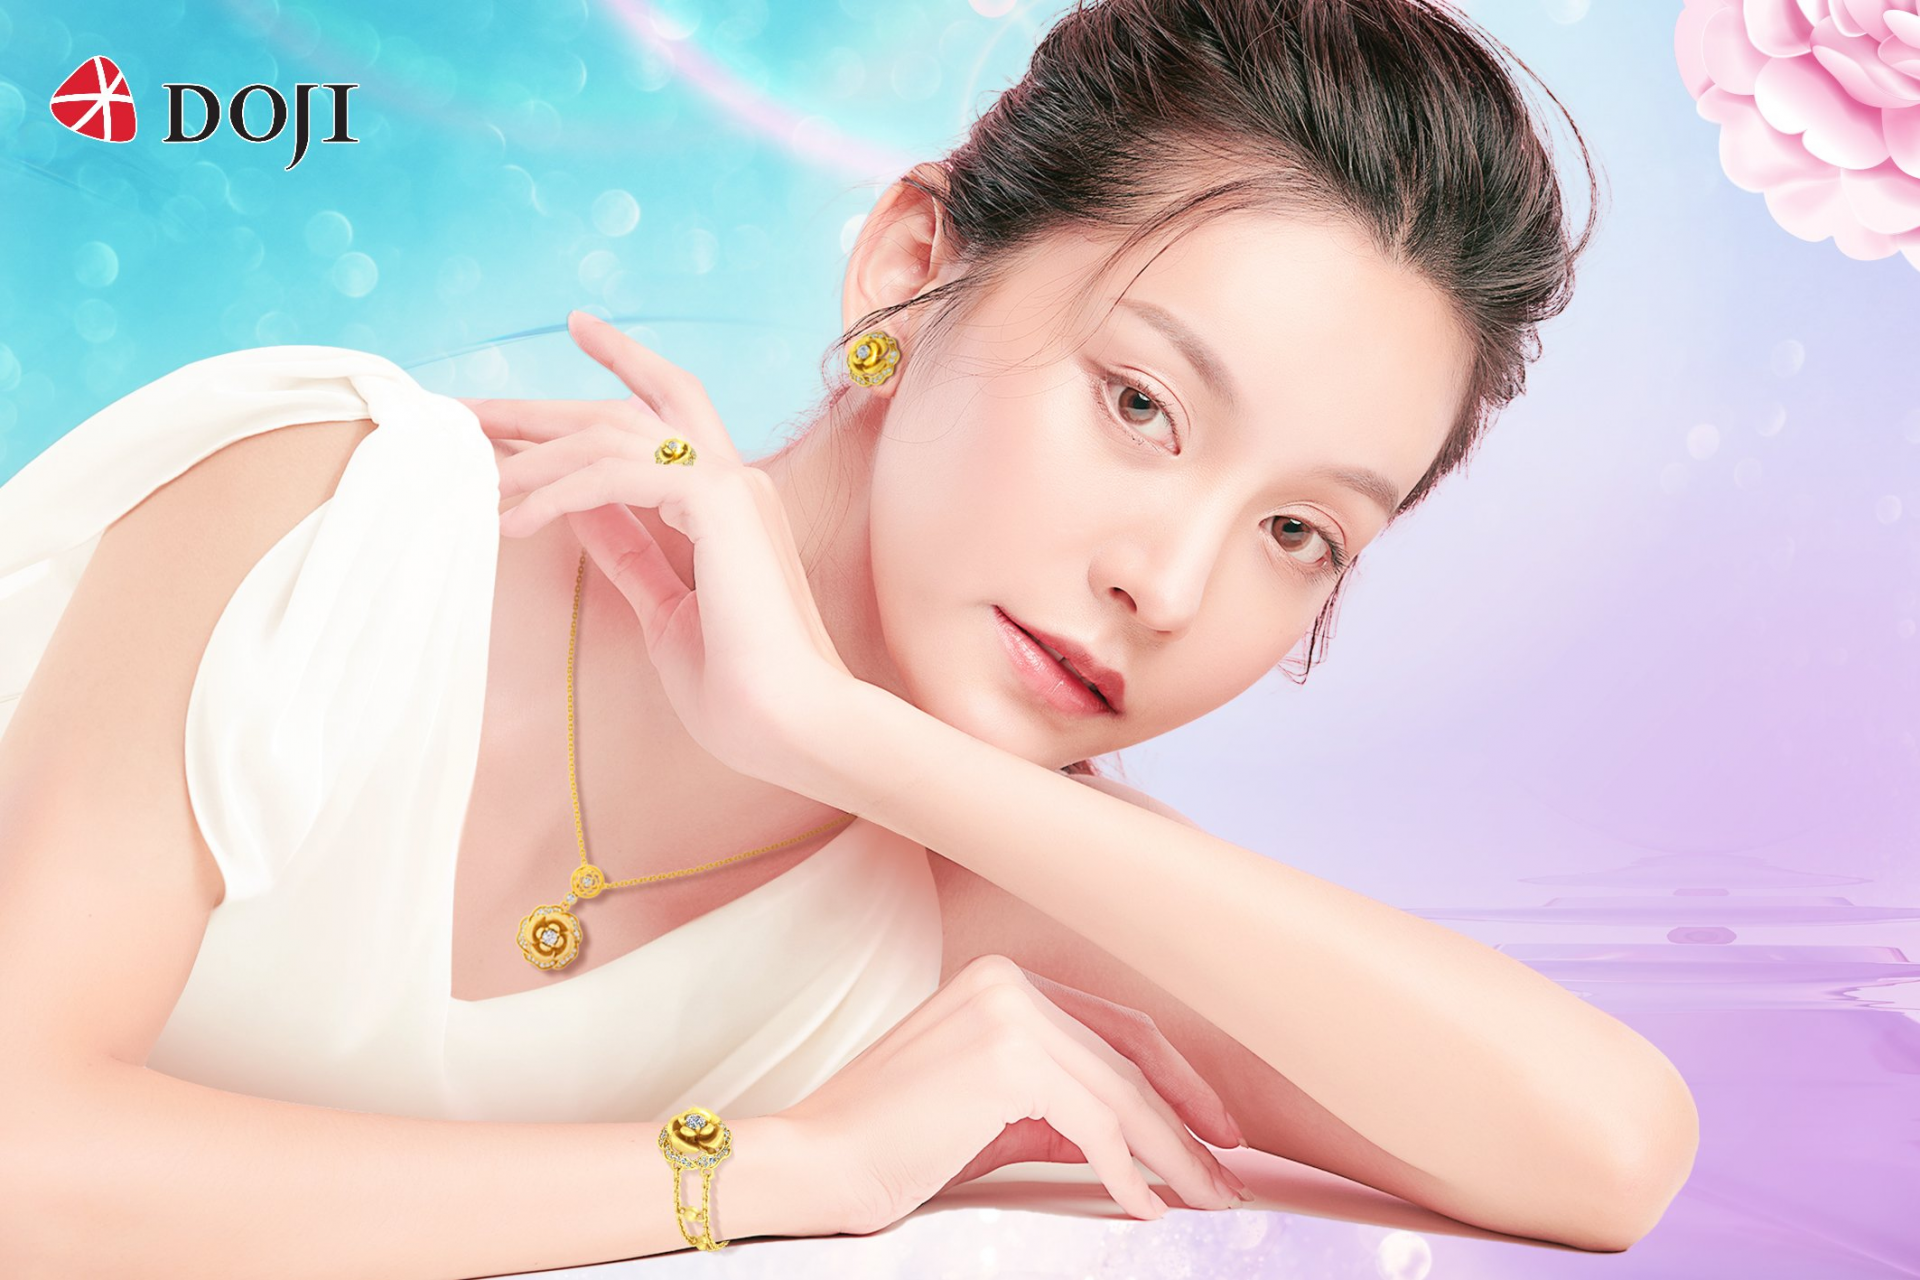 Trang sức vàng 24K công nghệ 3D của DOJI có mẫu mã đa dạng, đem đến vẻ đẹp luôn tỏa sáng cho phụ nữ Việt.